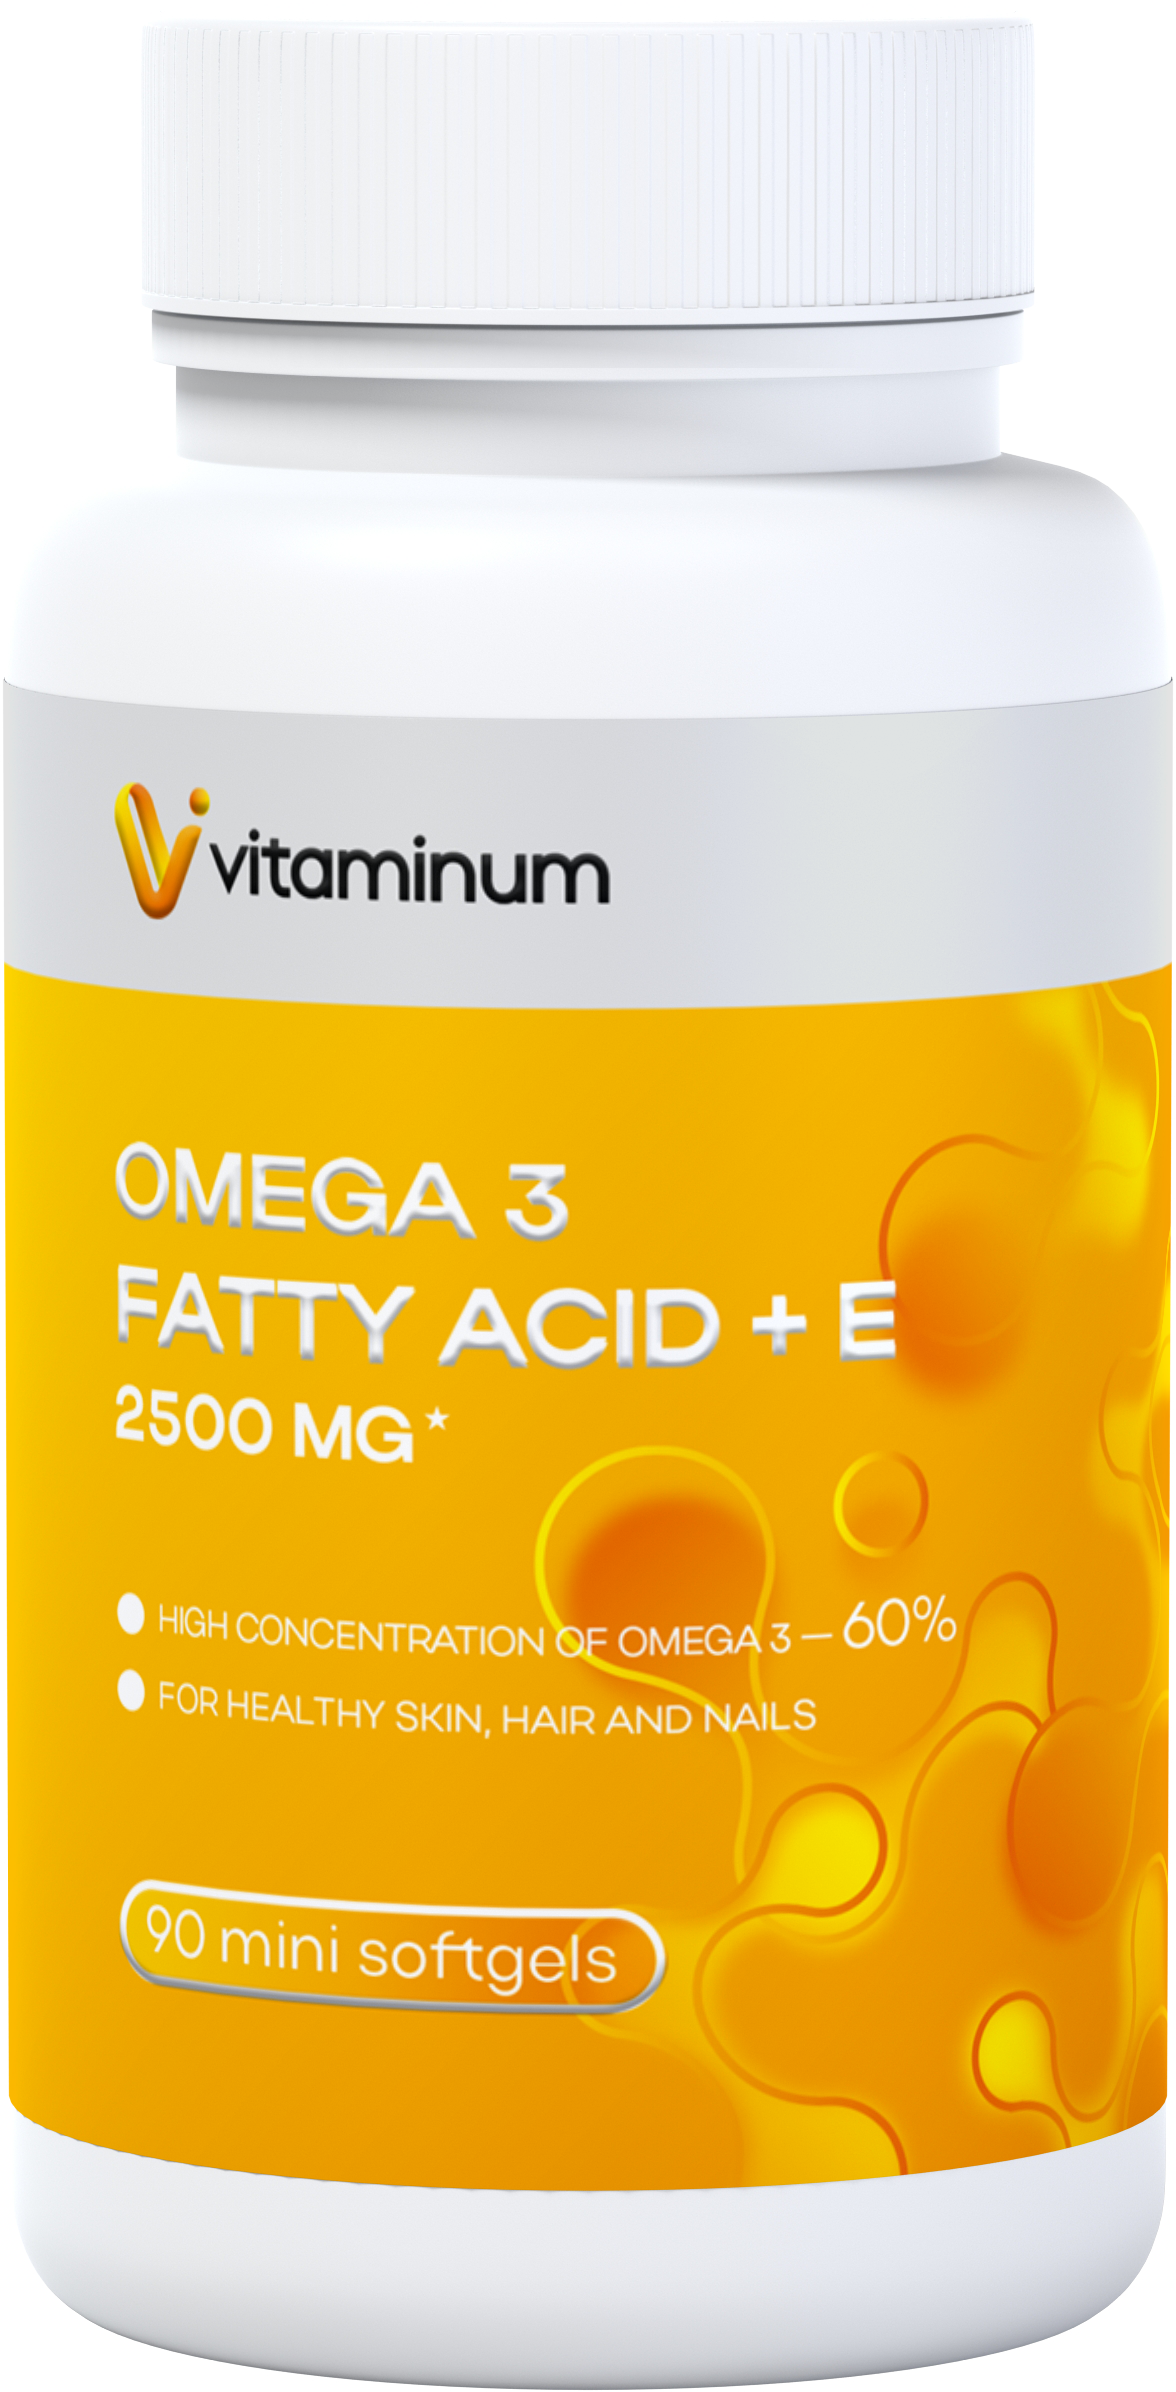  Vitaminum ОМЕГА 3 60% + витамин Е (2500 MG*) 90 капсул 700 мг   в Копейске